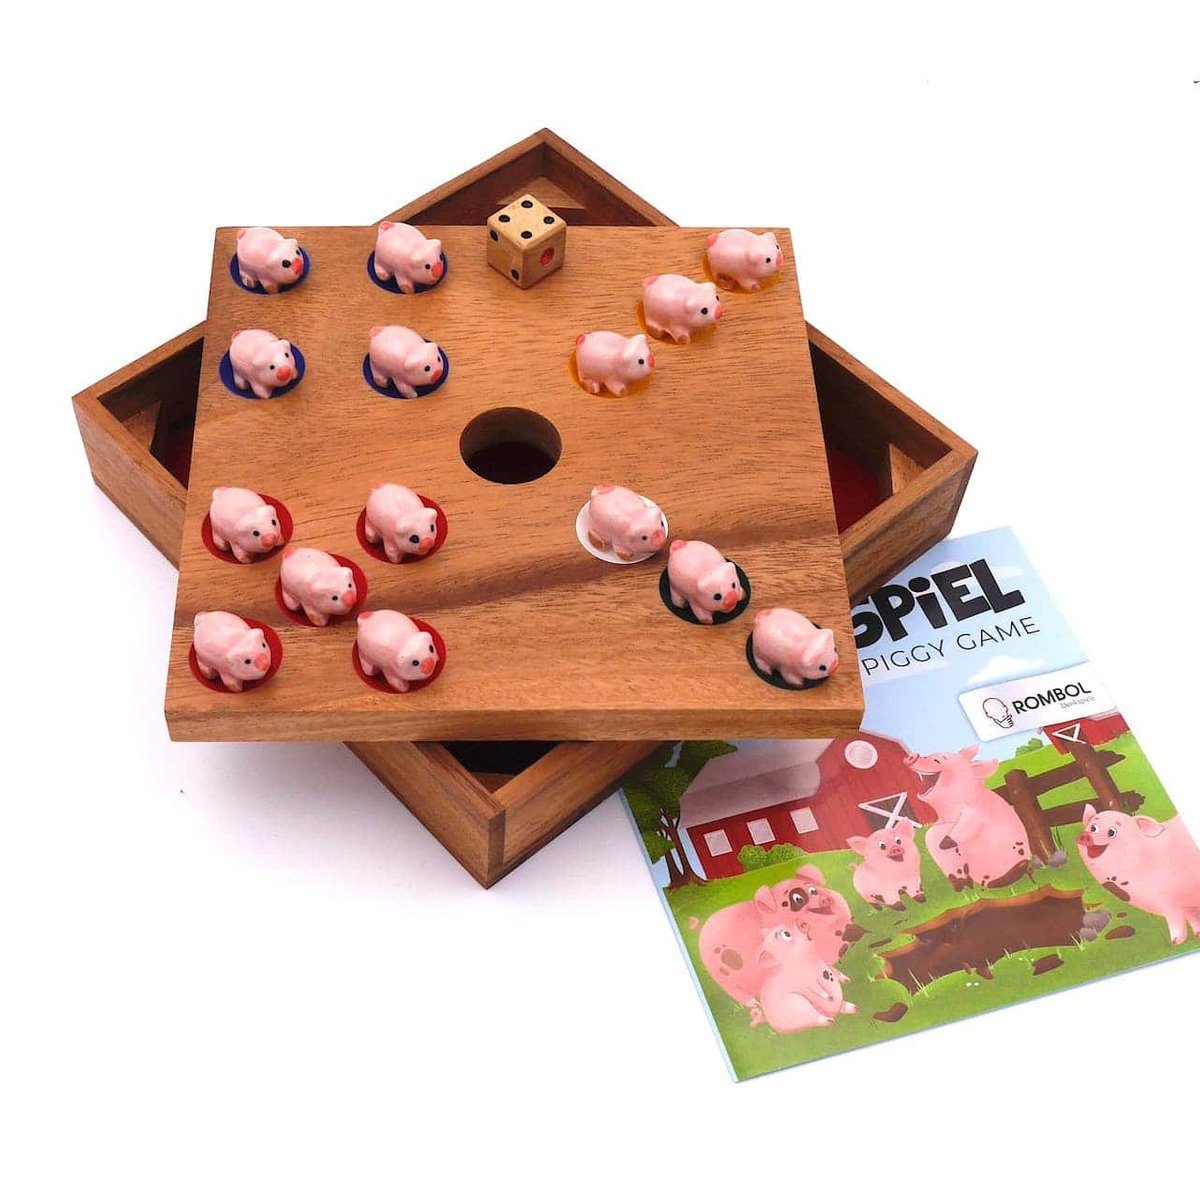 ROMBOL Denkspiele Spiel, Brettspiel Tierfiguren mit Ferkelspiel für Familie, den - süßen Würfelspiel die Holzspiel